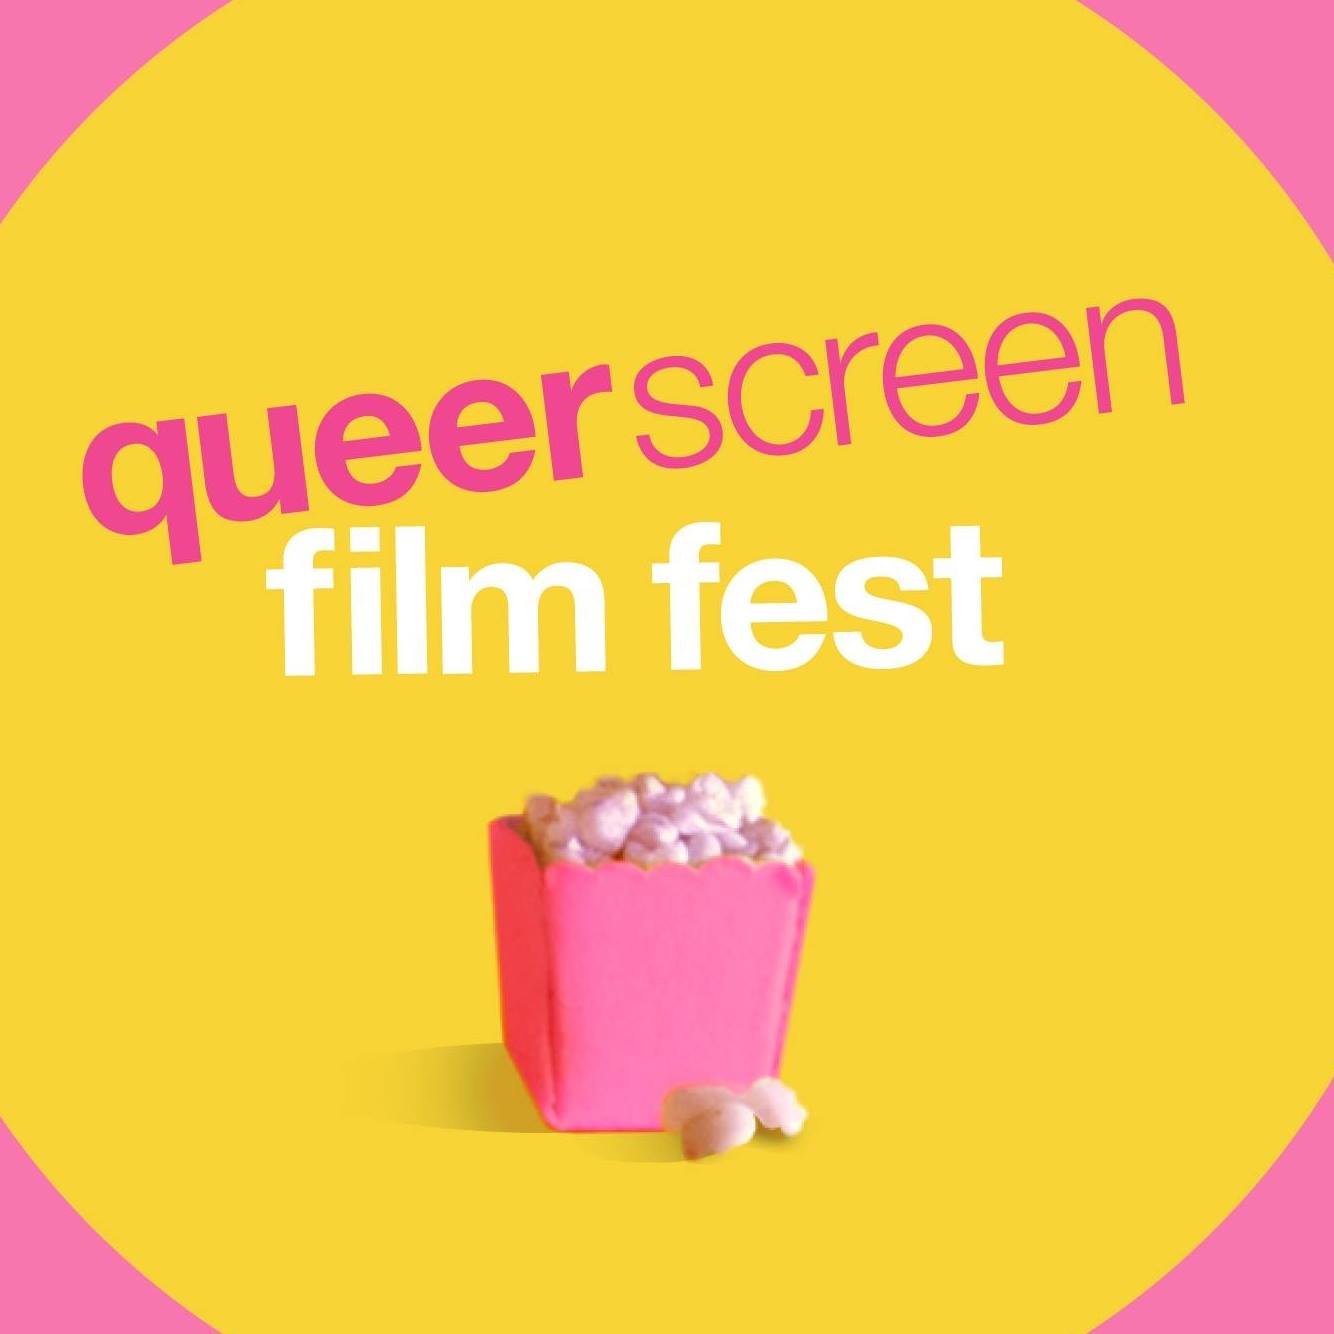 Queer Screen Mardi Gras Film Festival